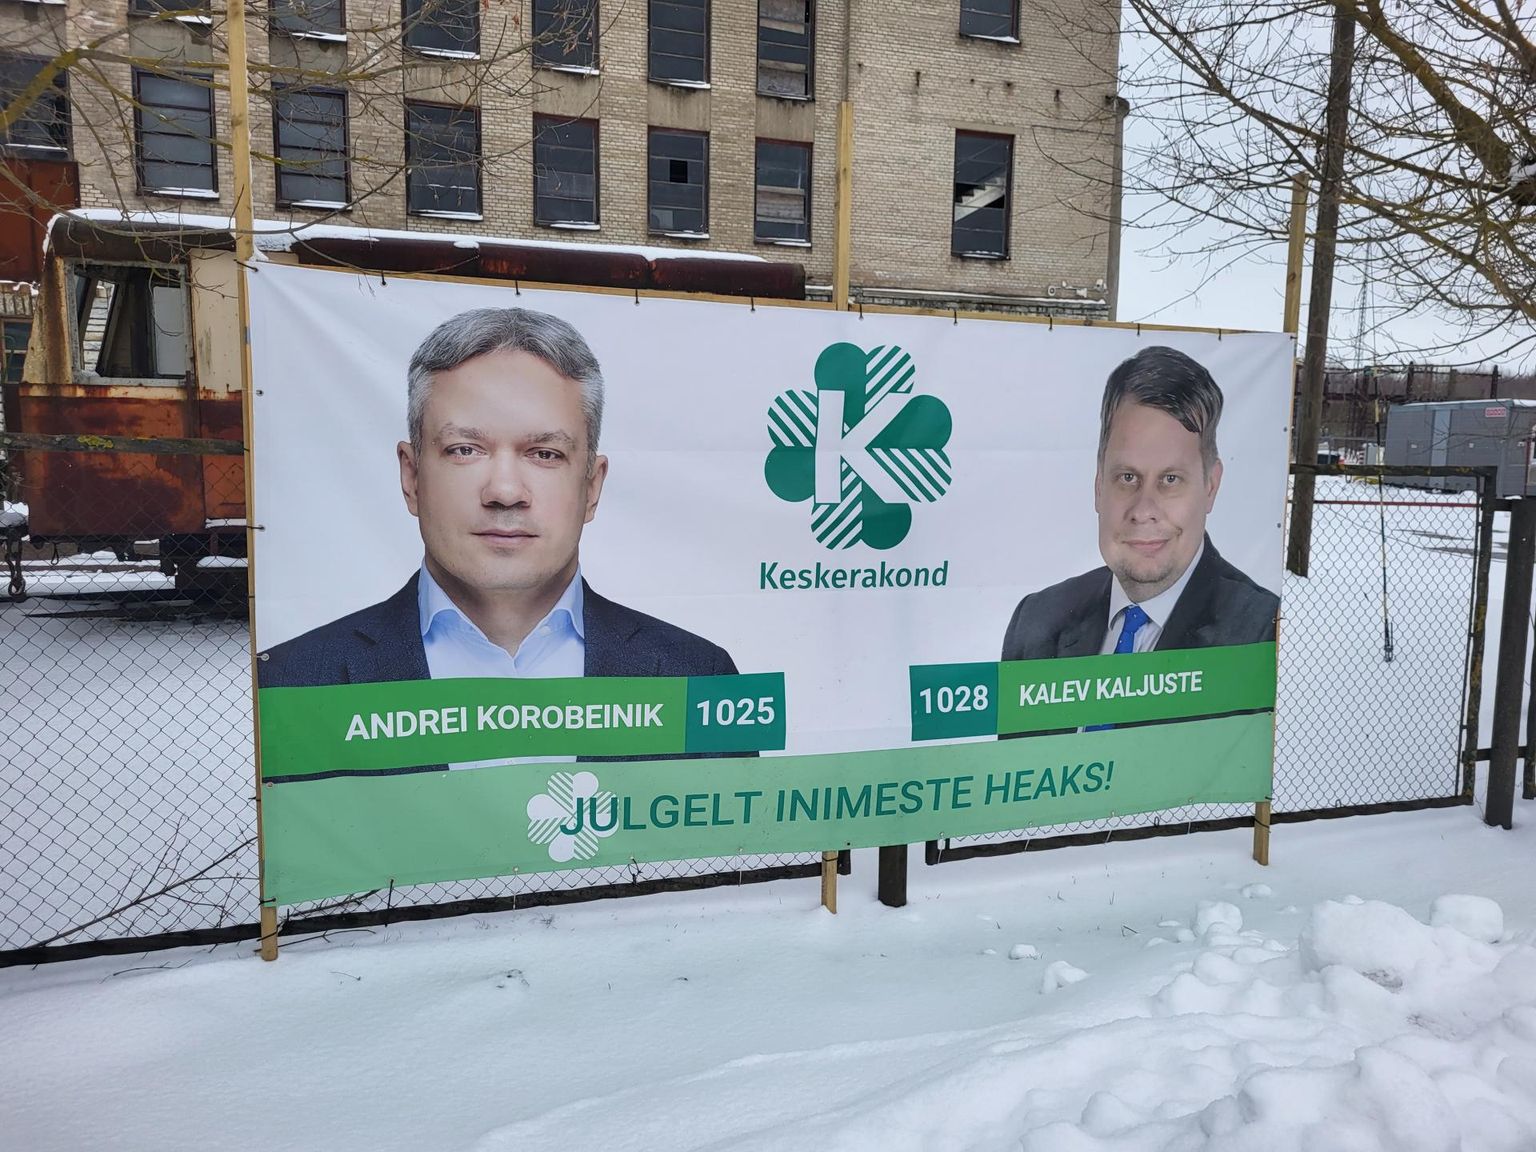 Выставка предвыборных плакатов политиков на территории бывшего брикетного завода Тоотси (на заднем плане).